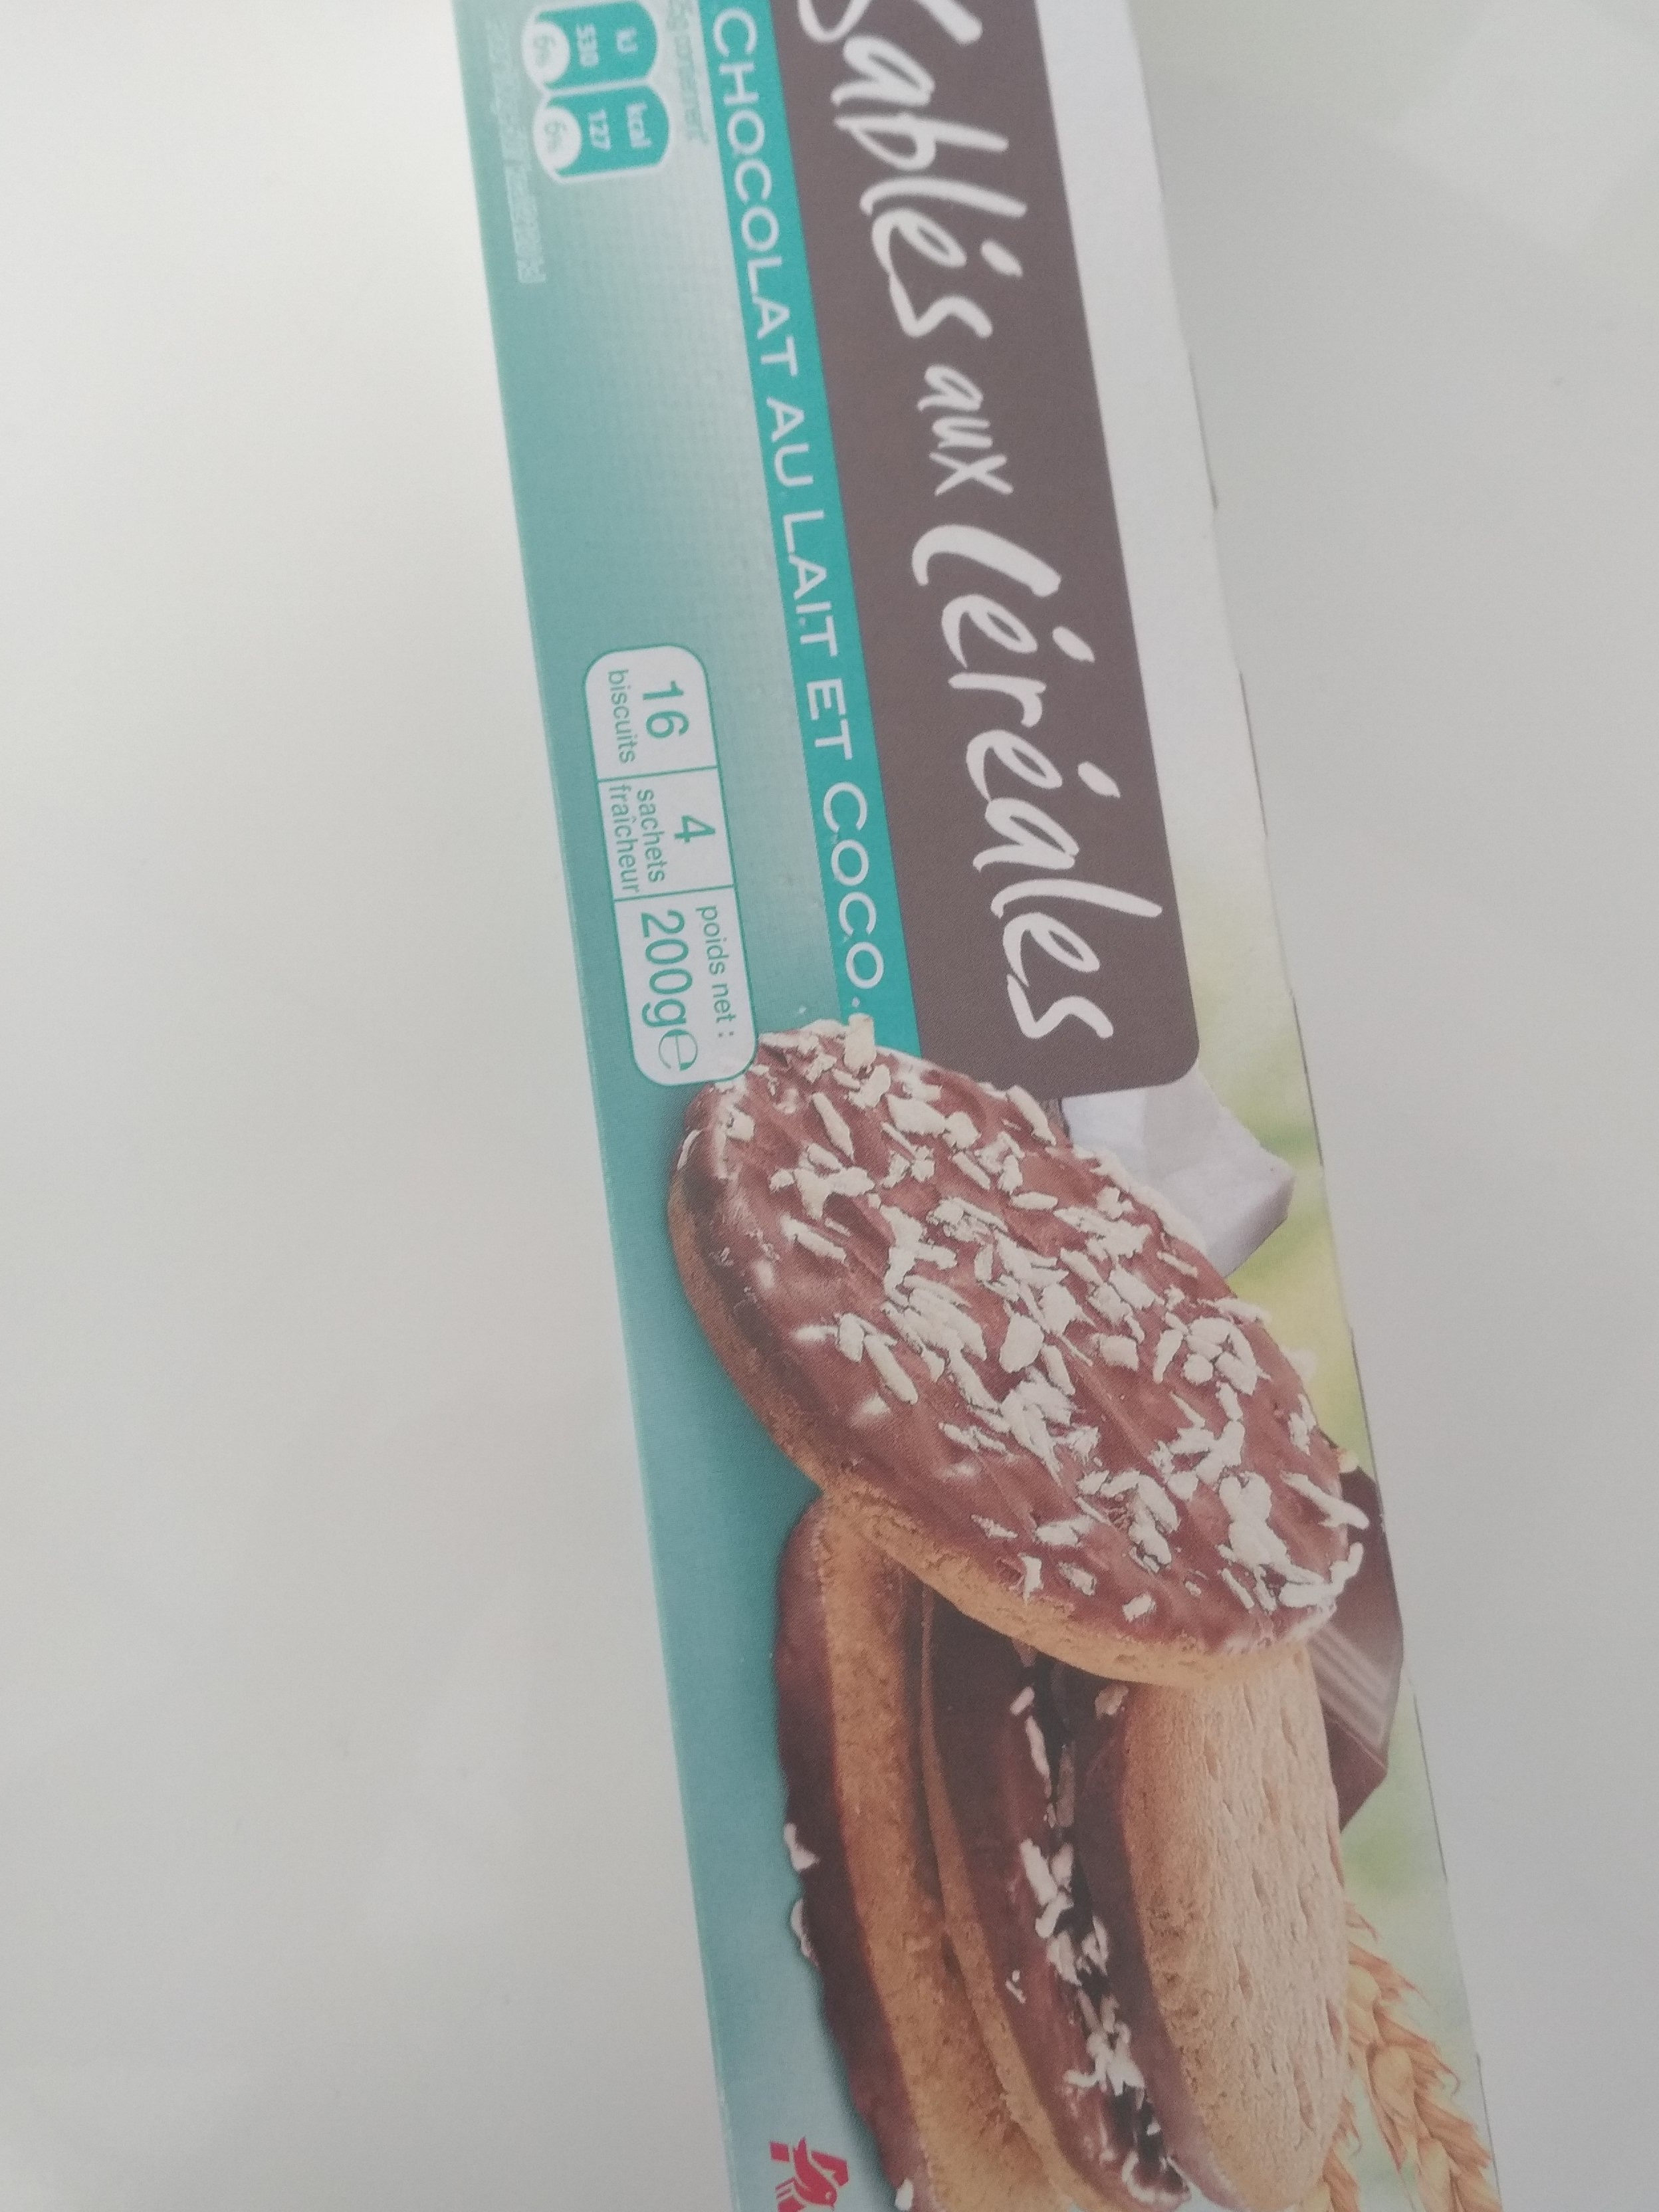 Sablés céréales chocolat coco x16 - Product - fr